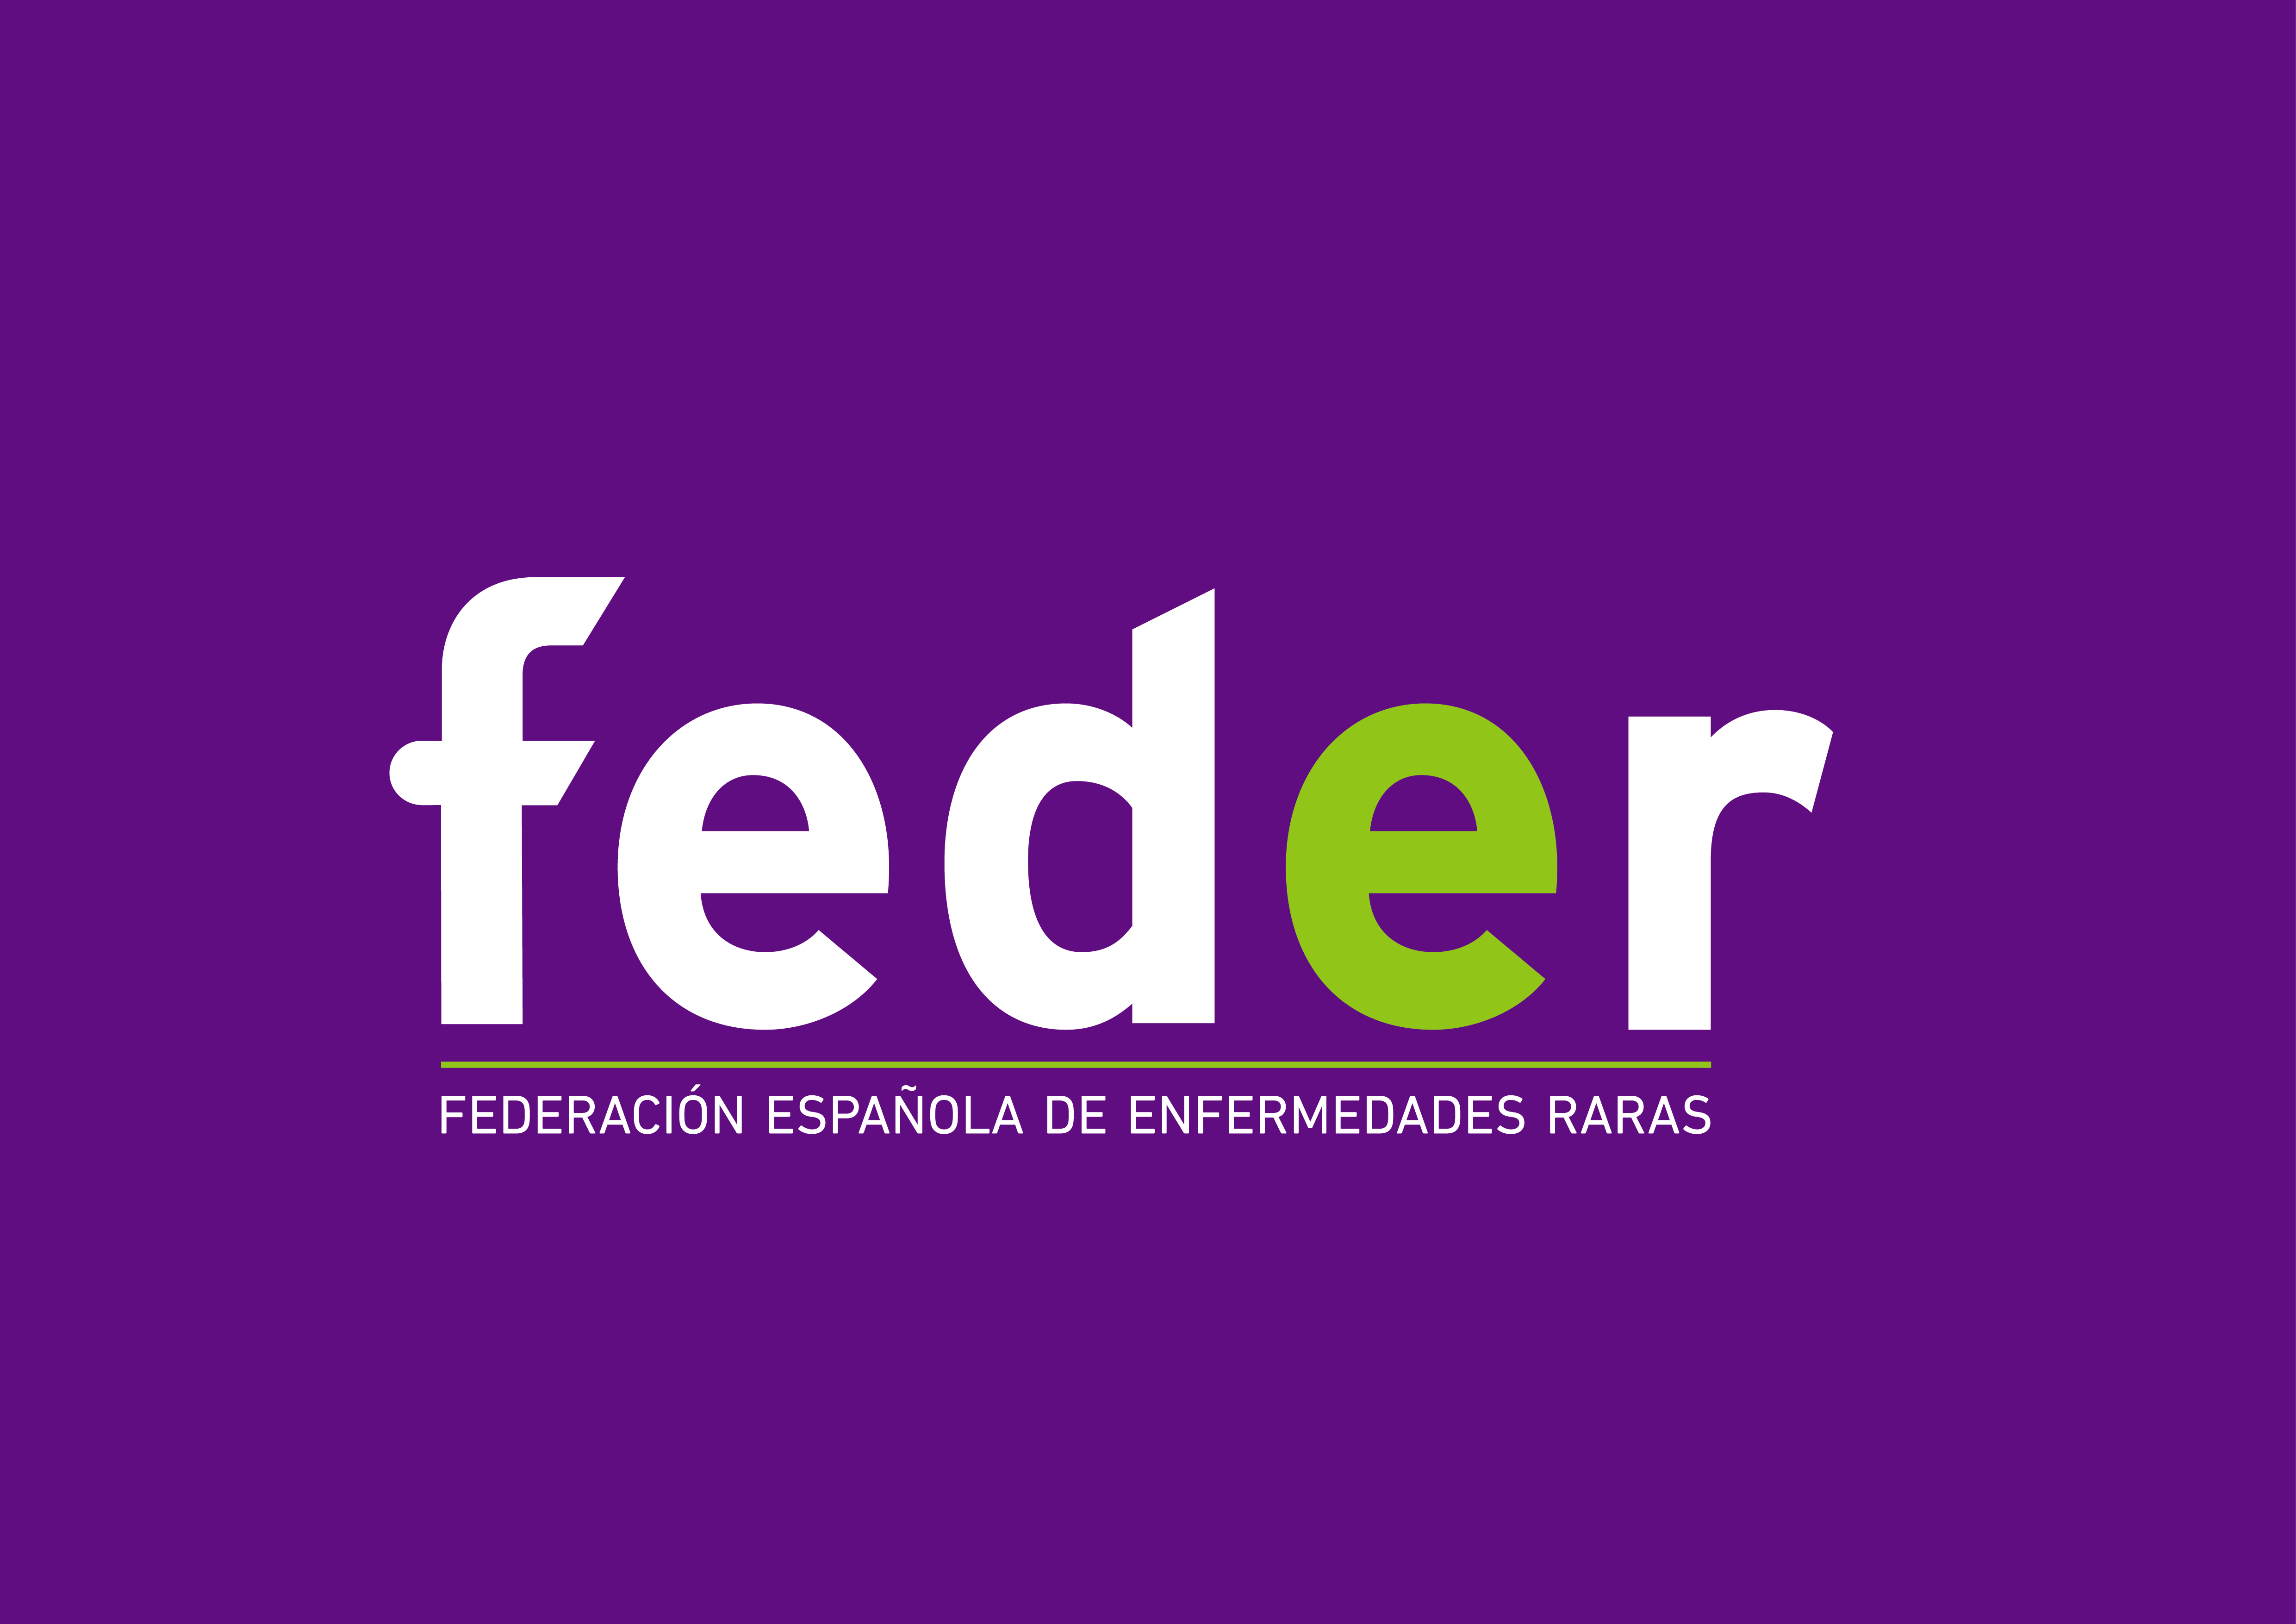 Logo de FEDER con el fondo morado.